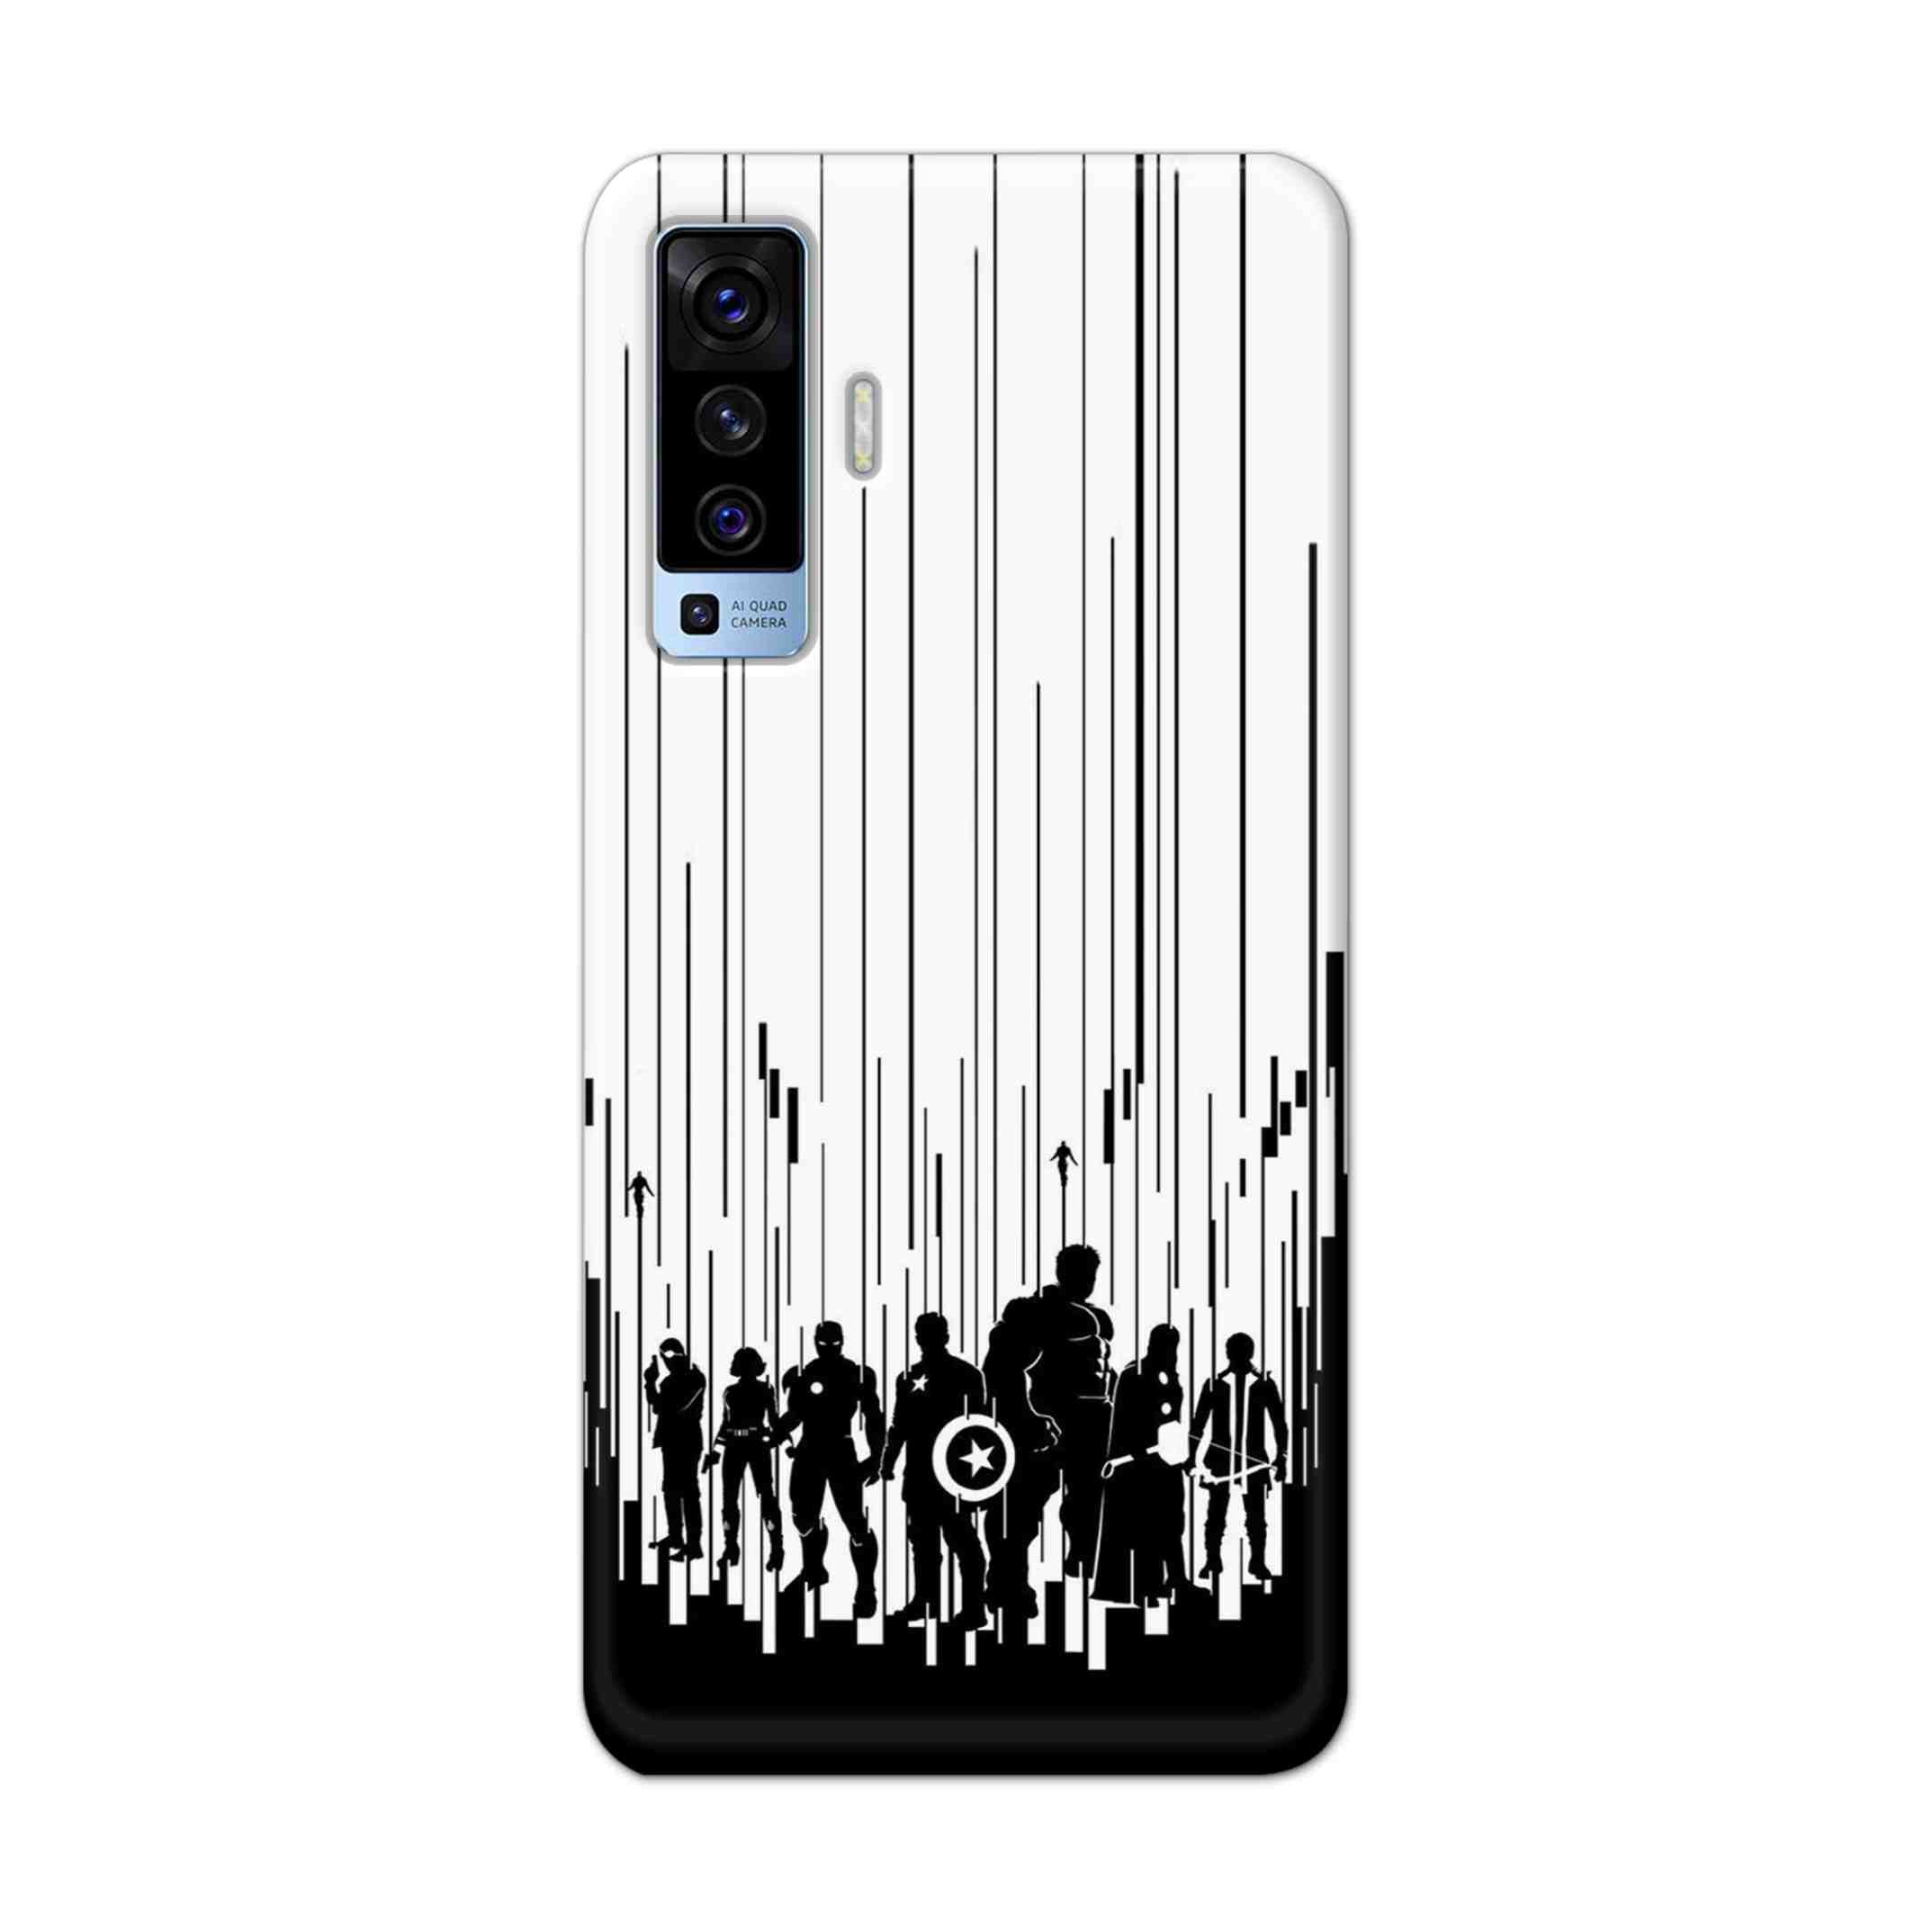 Buy Black And White Avengers Hard Back Mobile Phone Case Cover For Vivo X50 Online